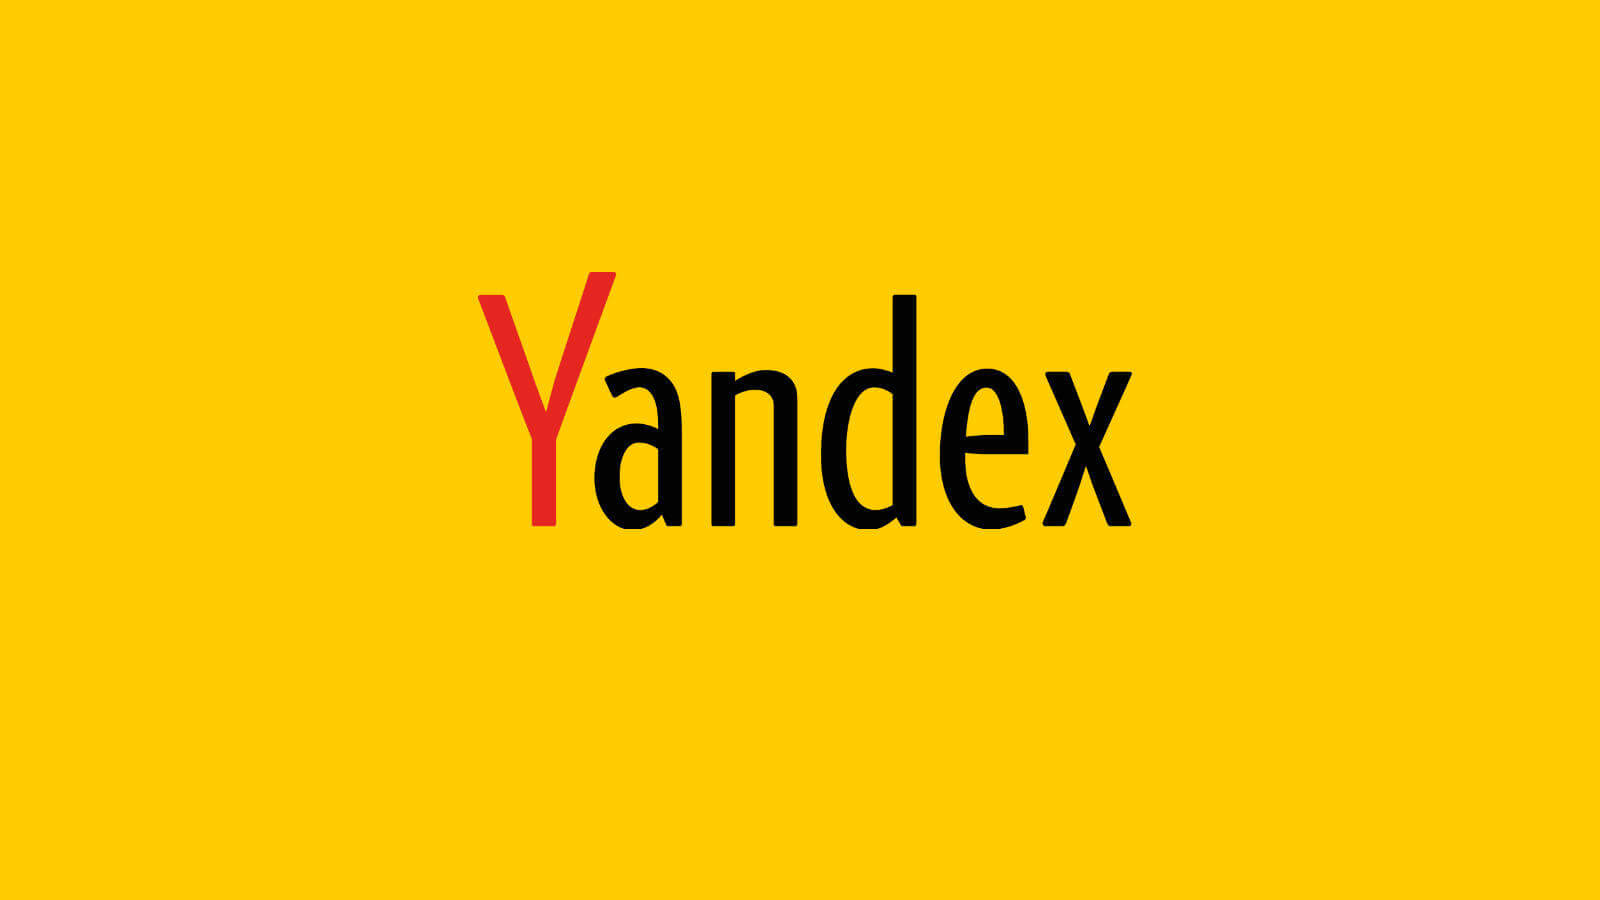 Disk Yandex com TR d ieywzoh5z1yd2w Linki Nedir? (Tıklamalı mıyız?)